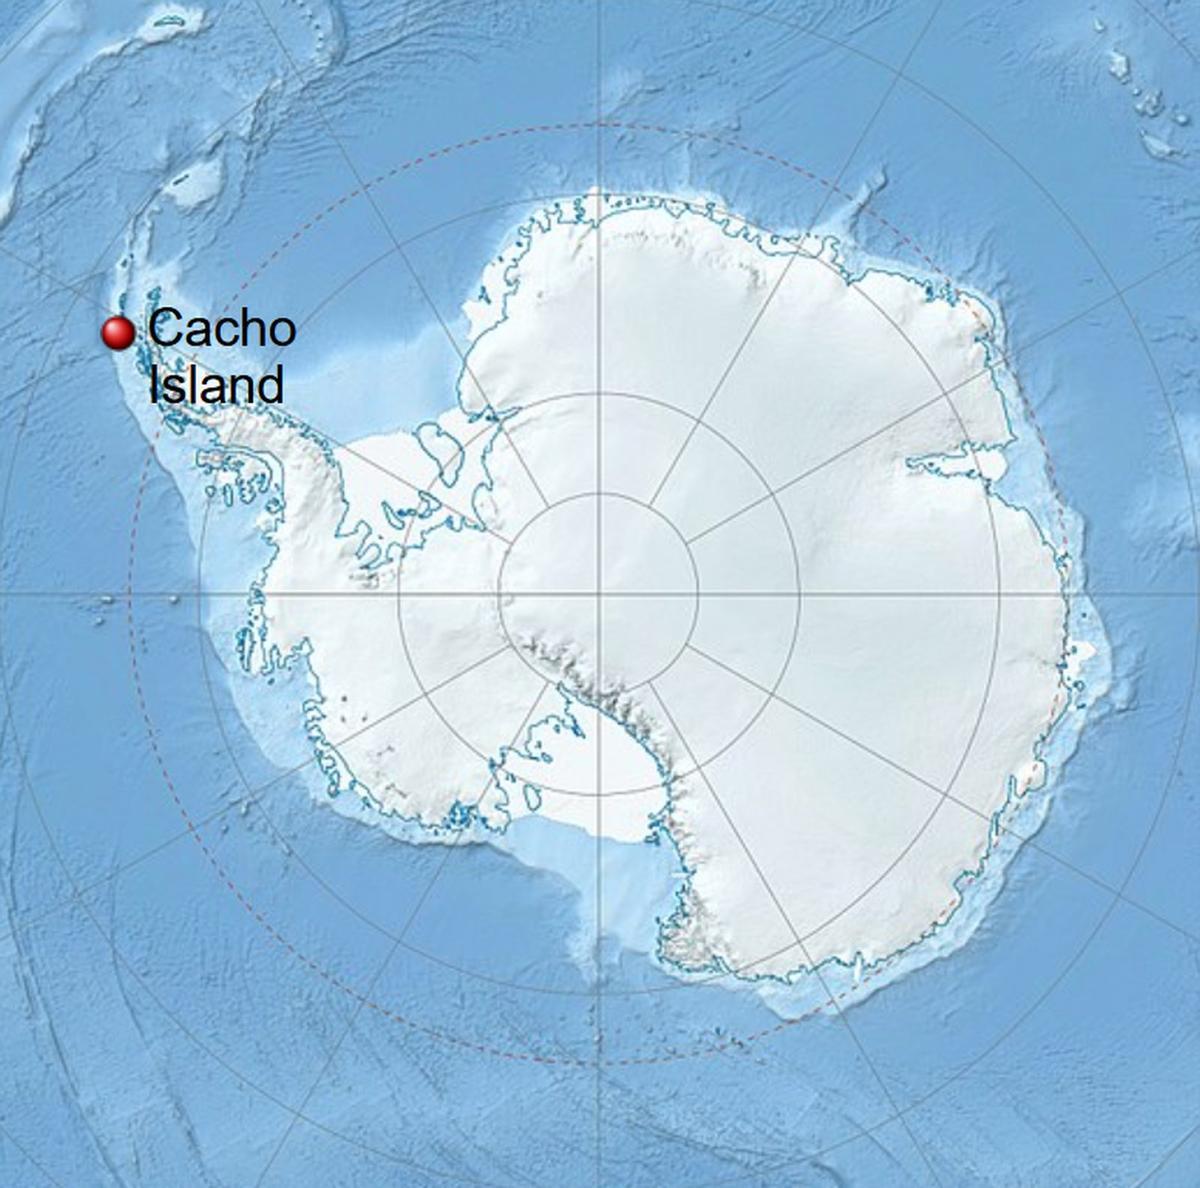 Mapa de la Antártida en el que está marcada Cacho Island.